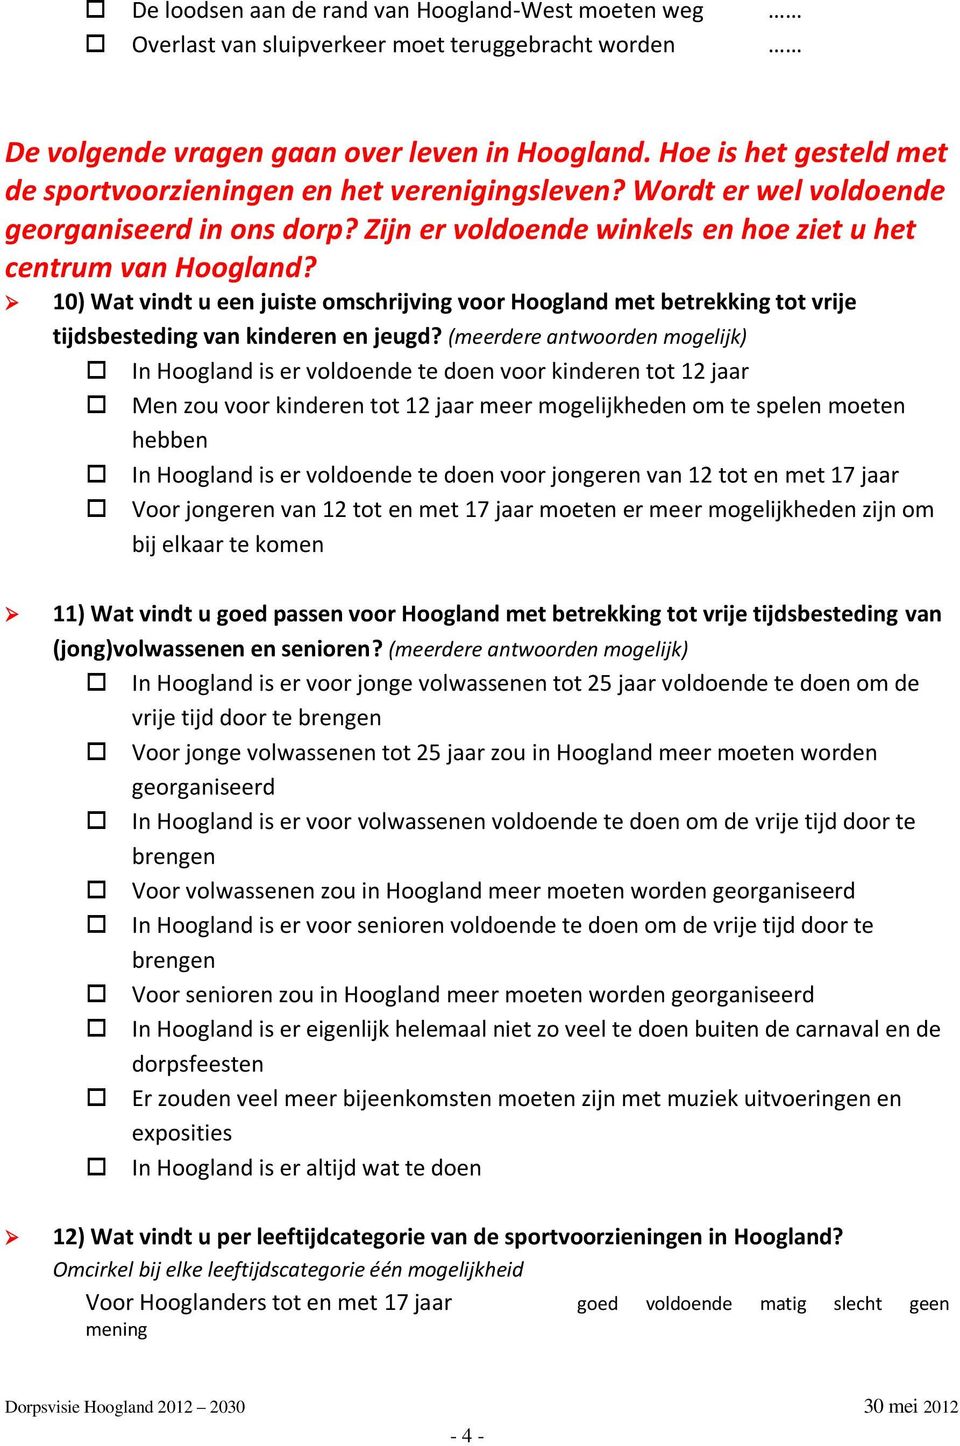 10) Wat vindt u een juiste omschrijving voor Hoogland met betrekking tot vrije tijdsbesteding van kinderen en jeugd?